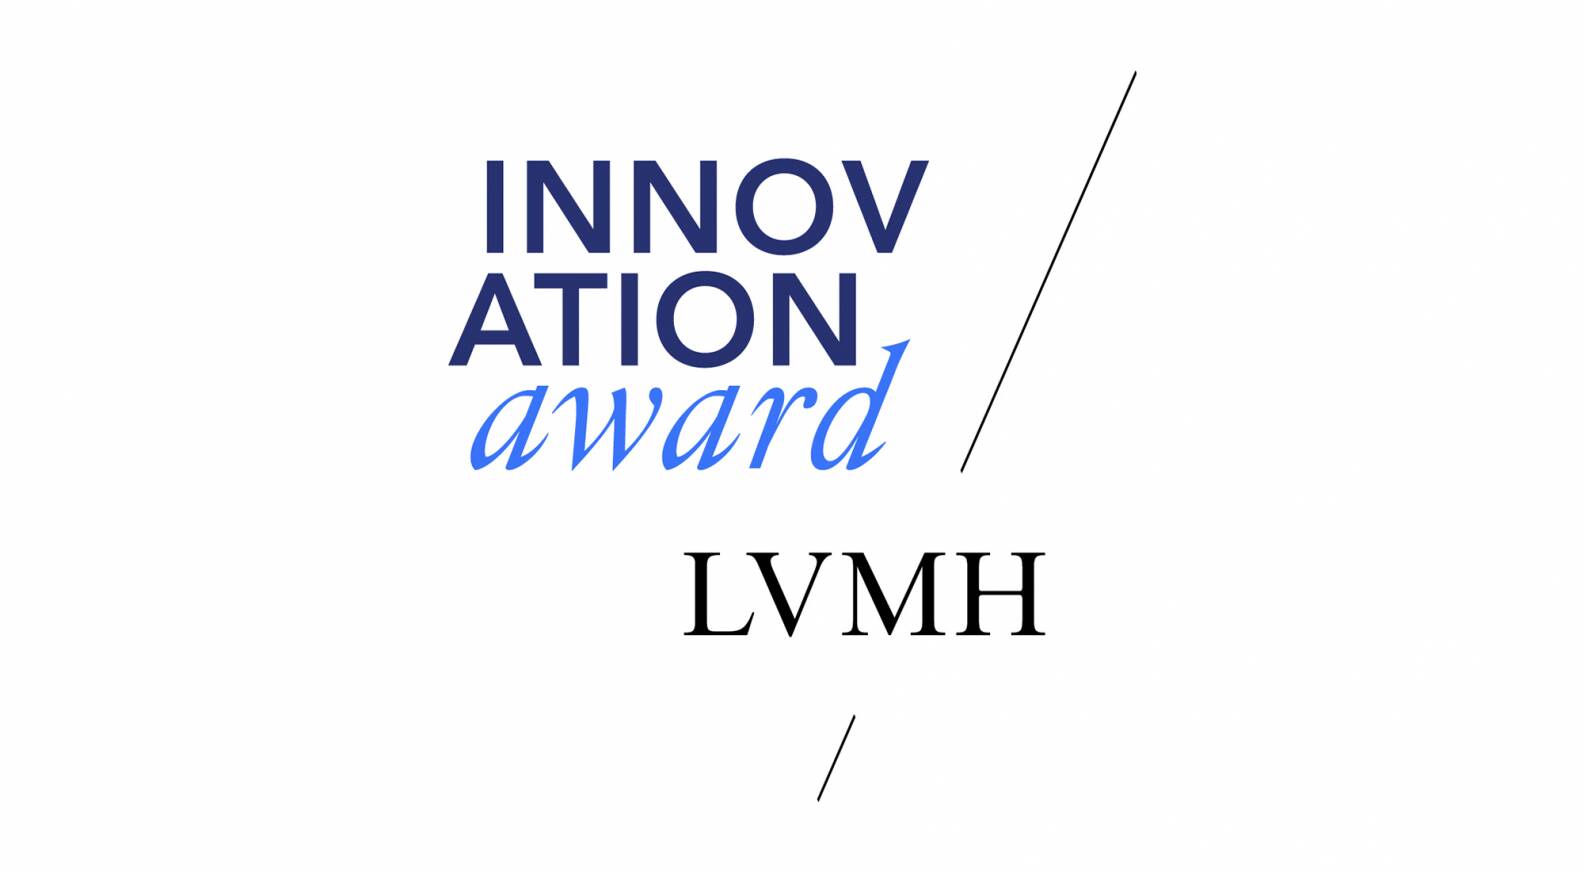 LVMH launches the LVMH Innovation Award at Viva Technology 2017 - LVMH